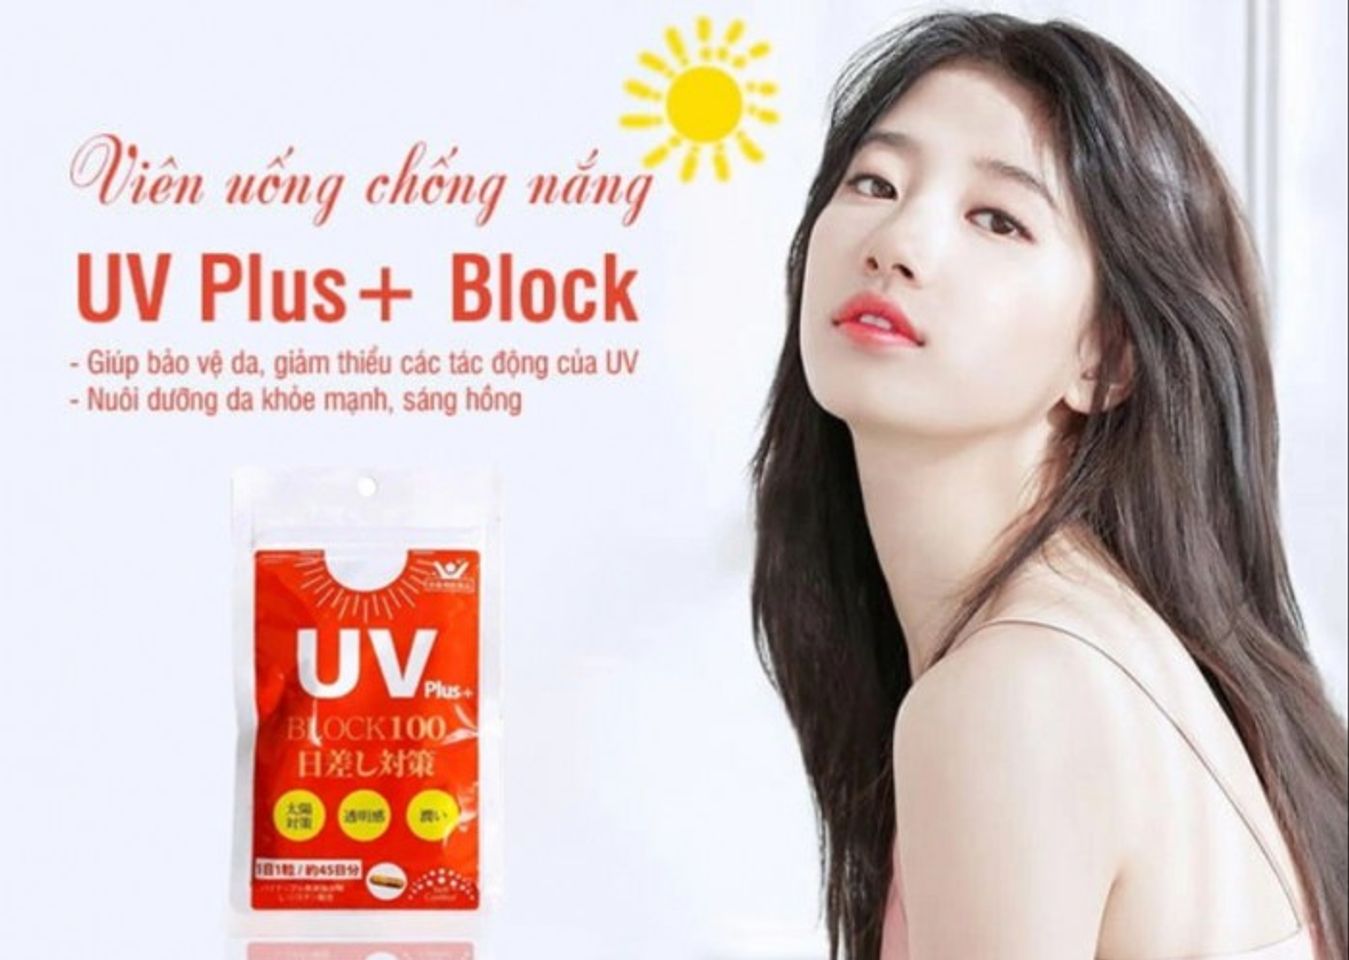 Viên uống chống nắng UV Plus+ Block 100 của Nhật gói 45 viên 1